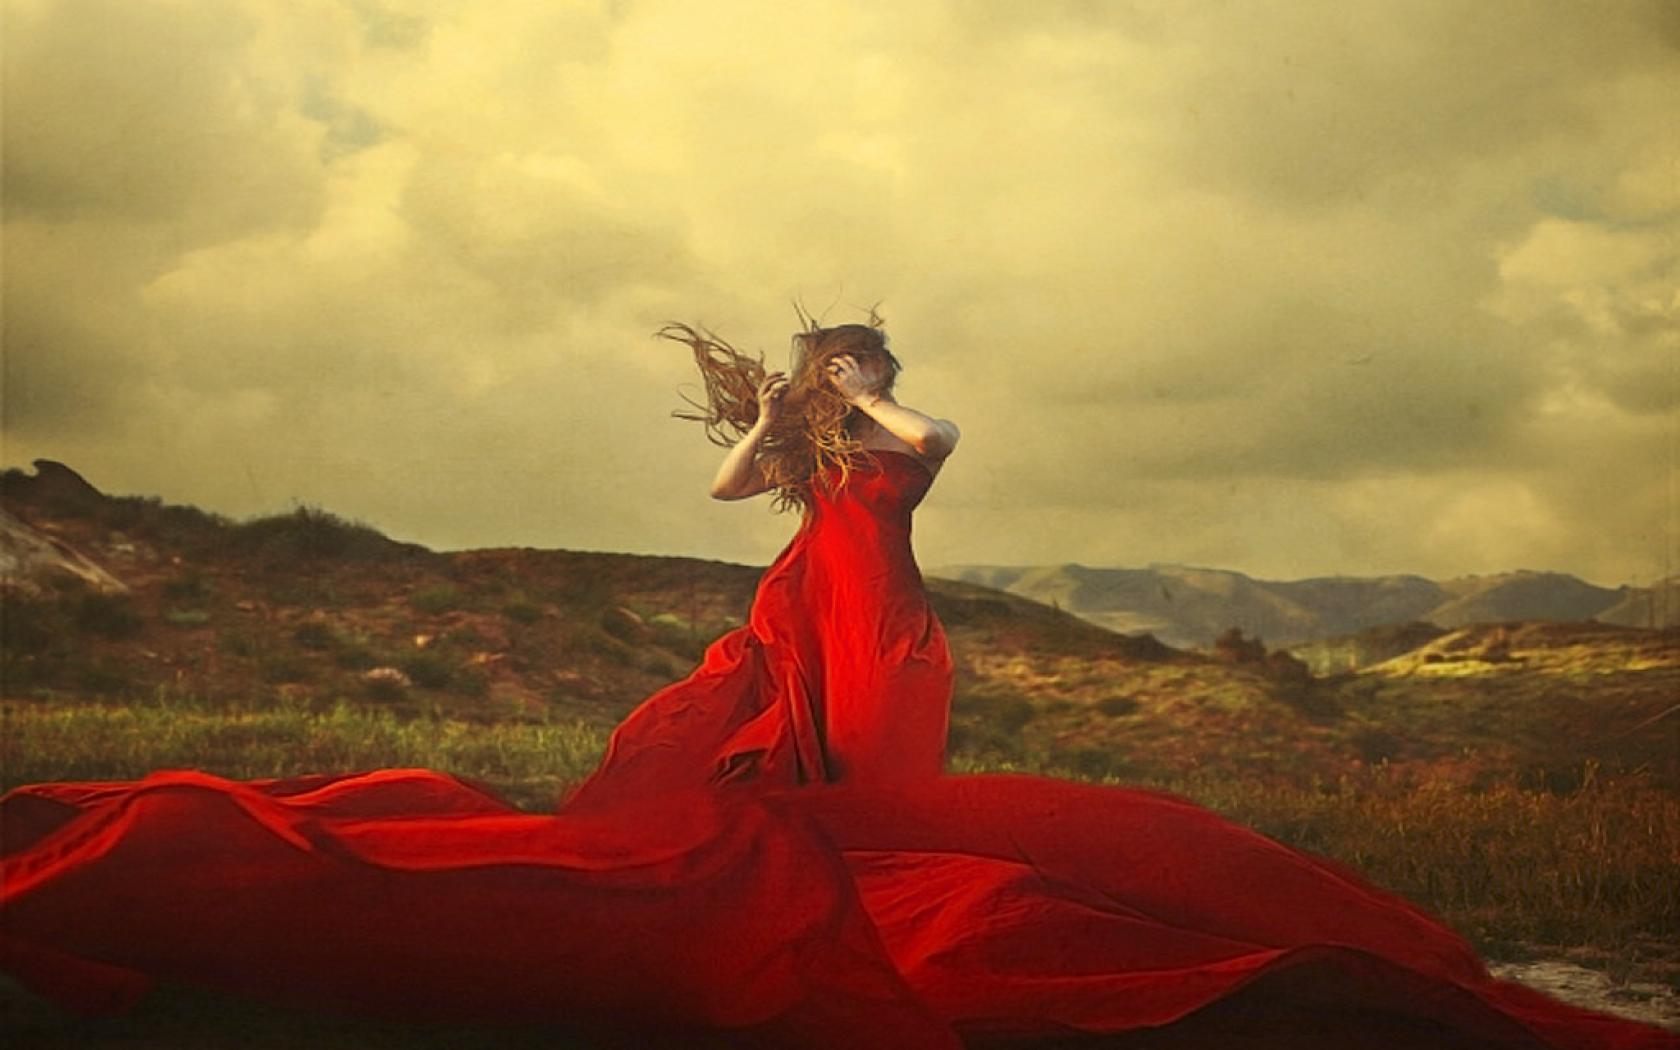 Фото Девушка в поле в красном платье с пышным подолом,  фотограф Brooke Shaden / Брук Шаден